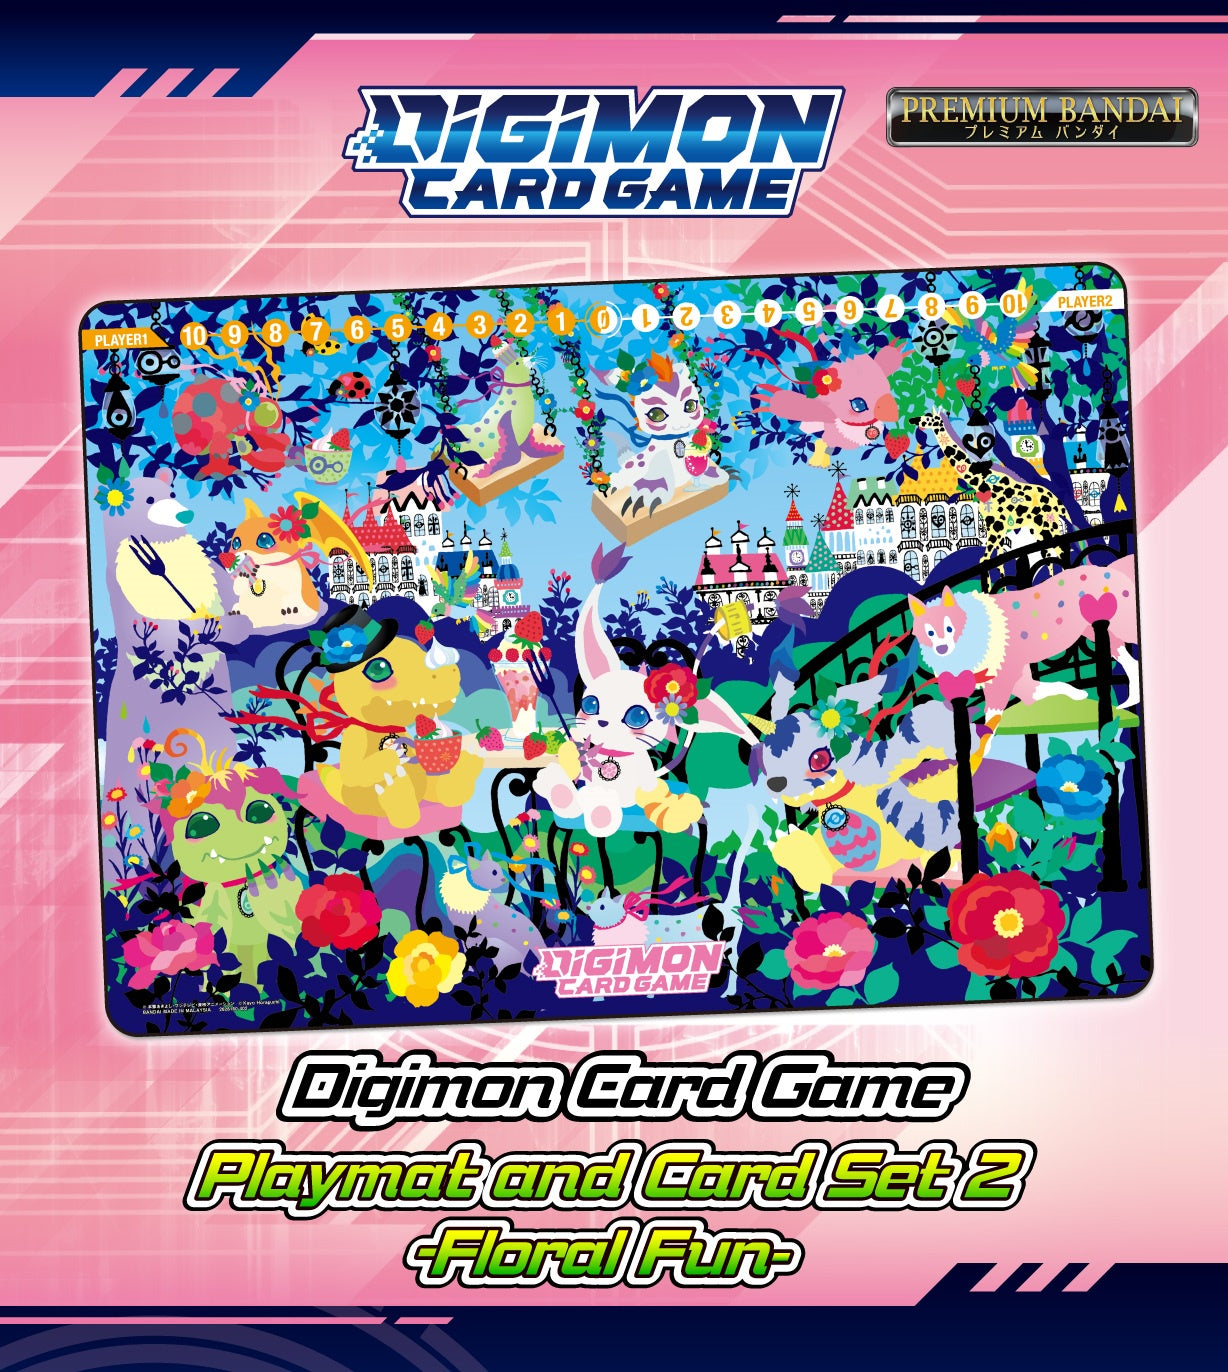 Digimon Card Game - Playmat and Card Set 2 - Floral Fun [PB-09]